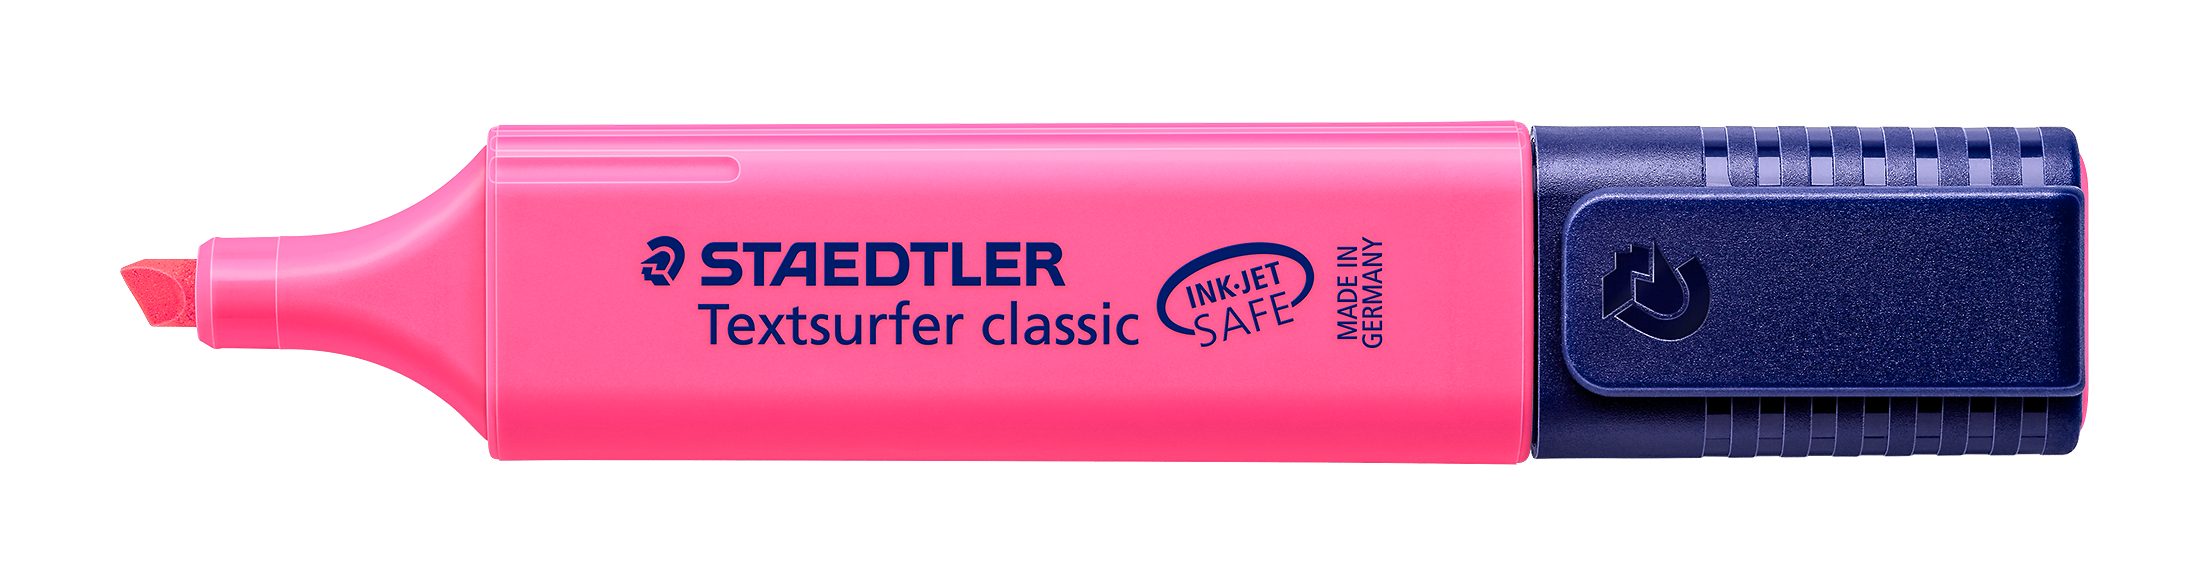 STAEDTLER Marker Staedtler Textsurfer classic rot 364-23 Leuchtstift, INK JET SAFE